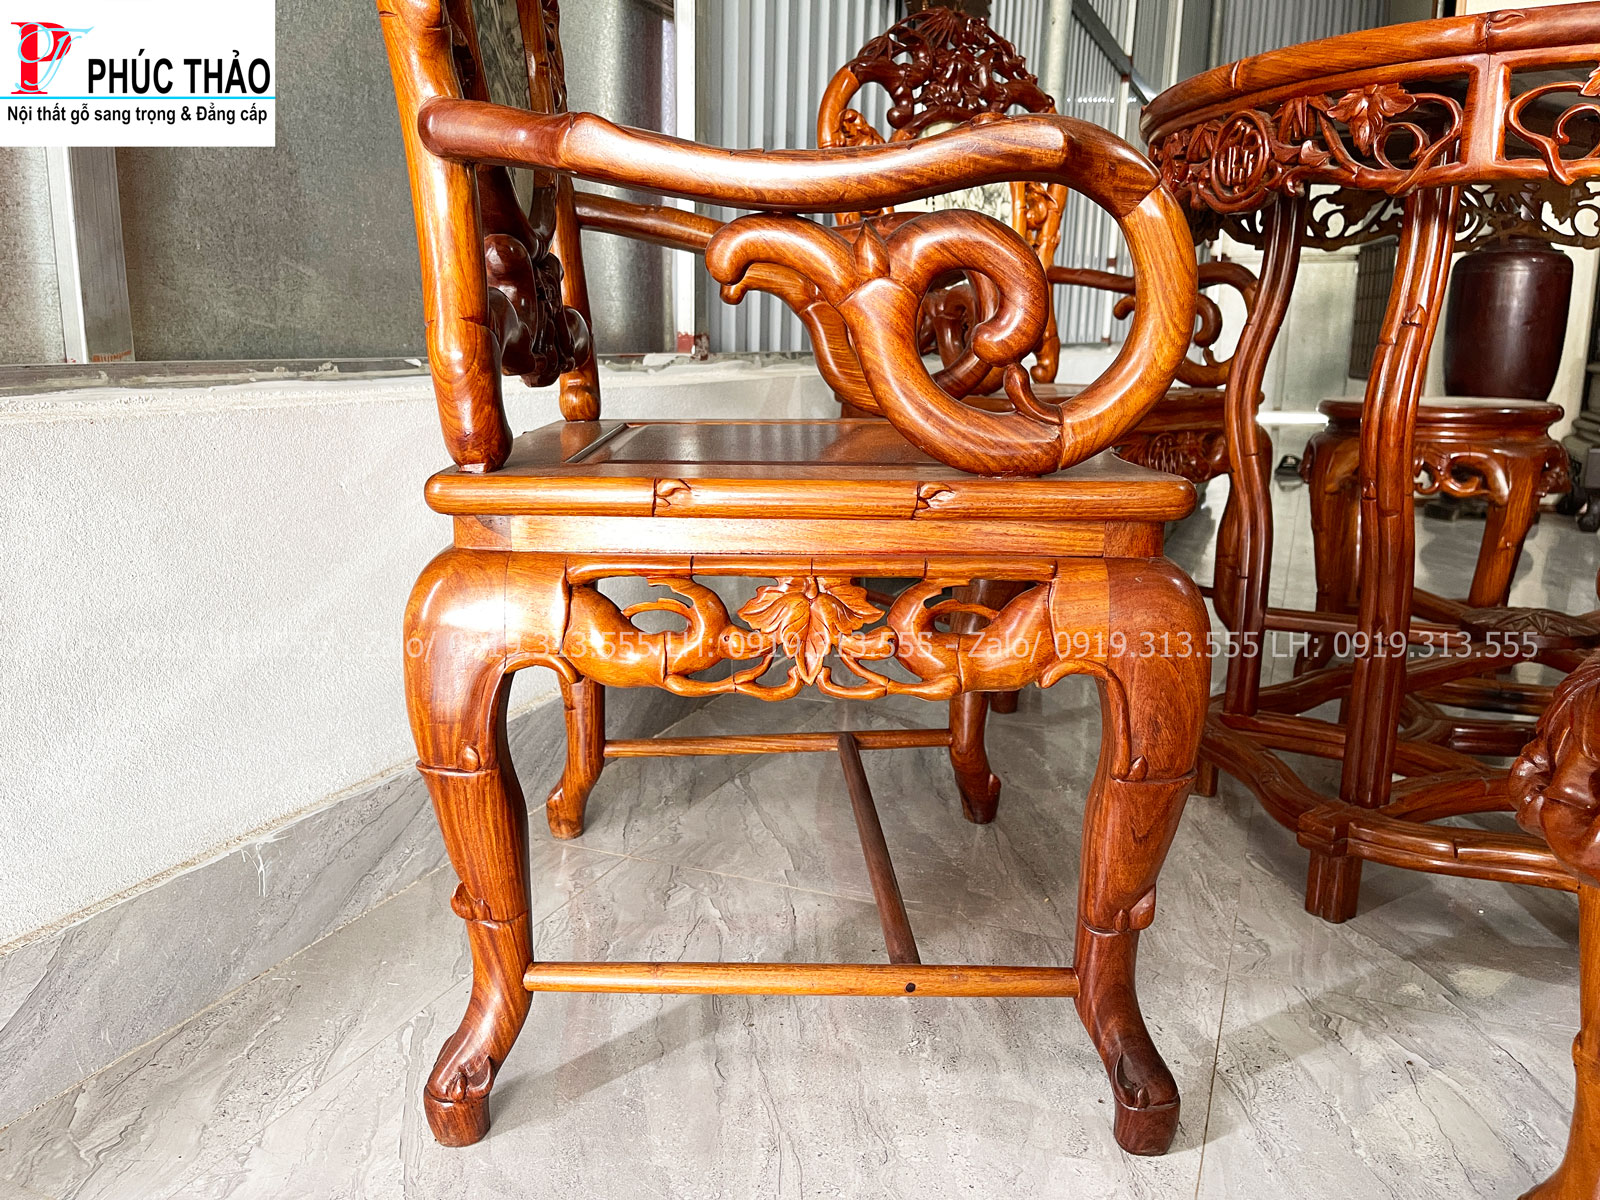 Hình ảnh chi tiết bộ bàn ghế trúc dưa gỗ gụ Quảng Bình 